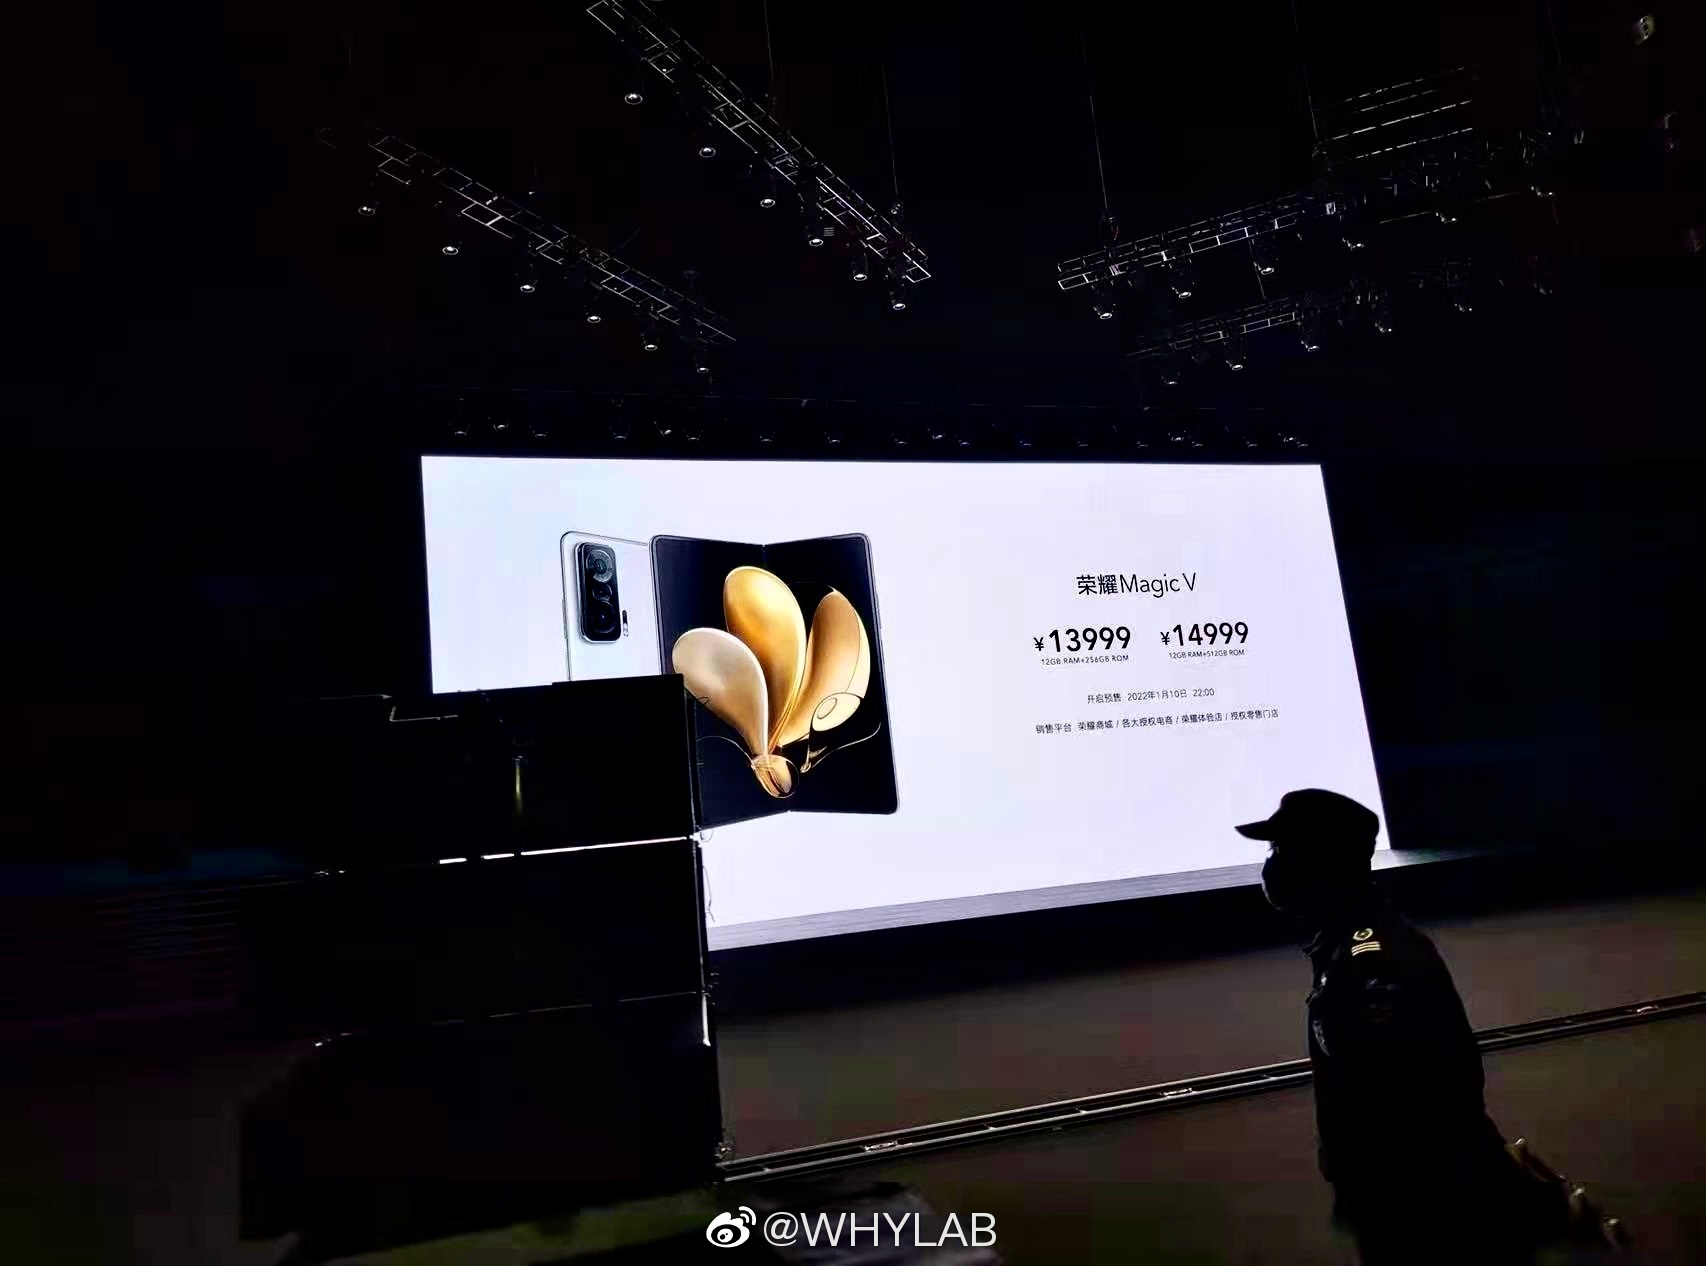 Honor Magic V -esitys/mainoskuva paljasti jo tietoja myös hinnoista. Kuva: WHYLAB / Weibo.